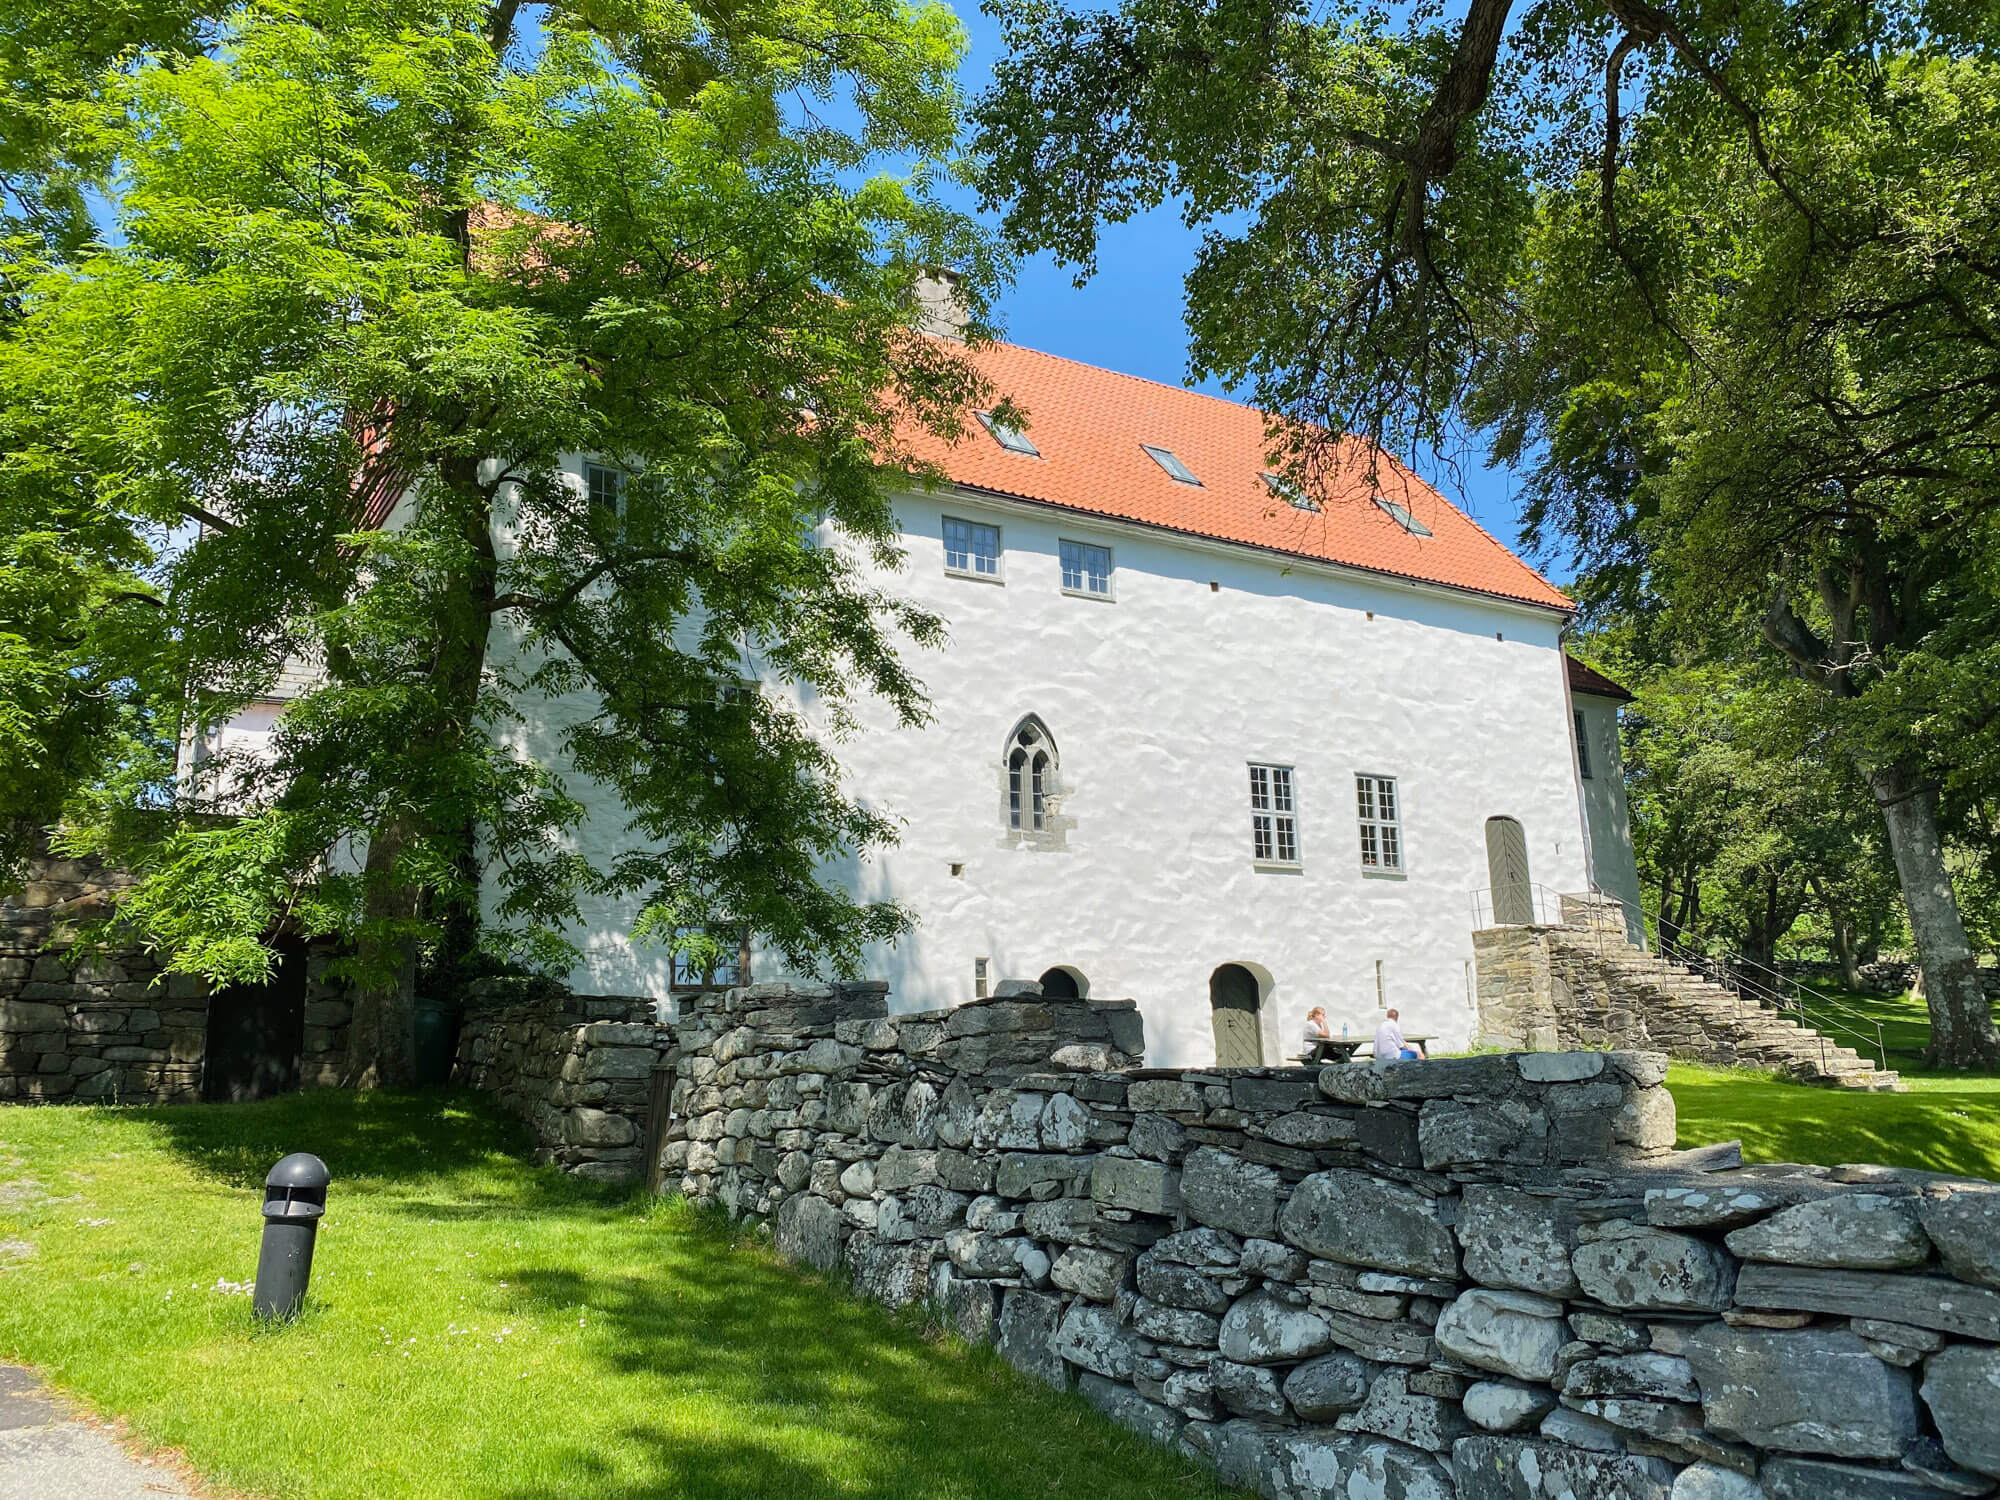 Utstein monastery